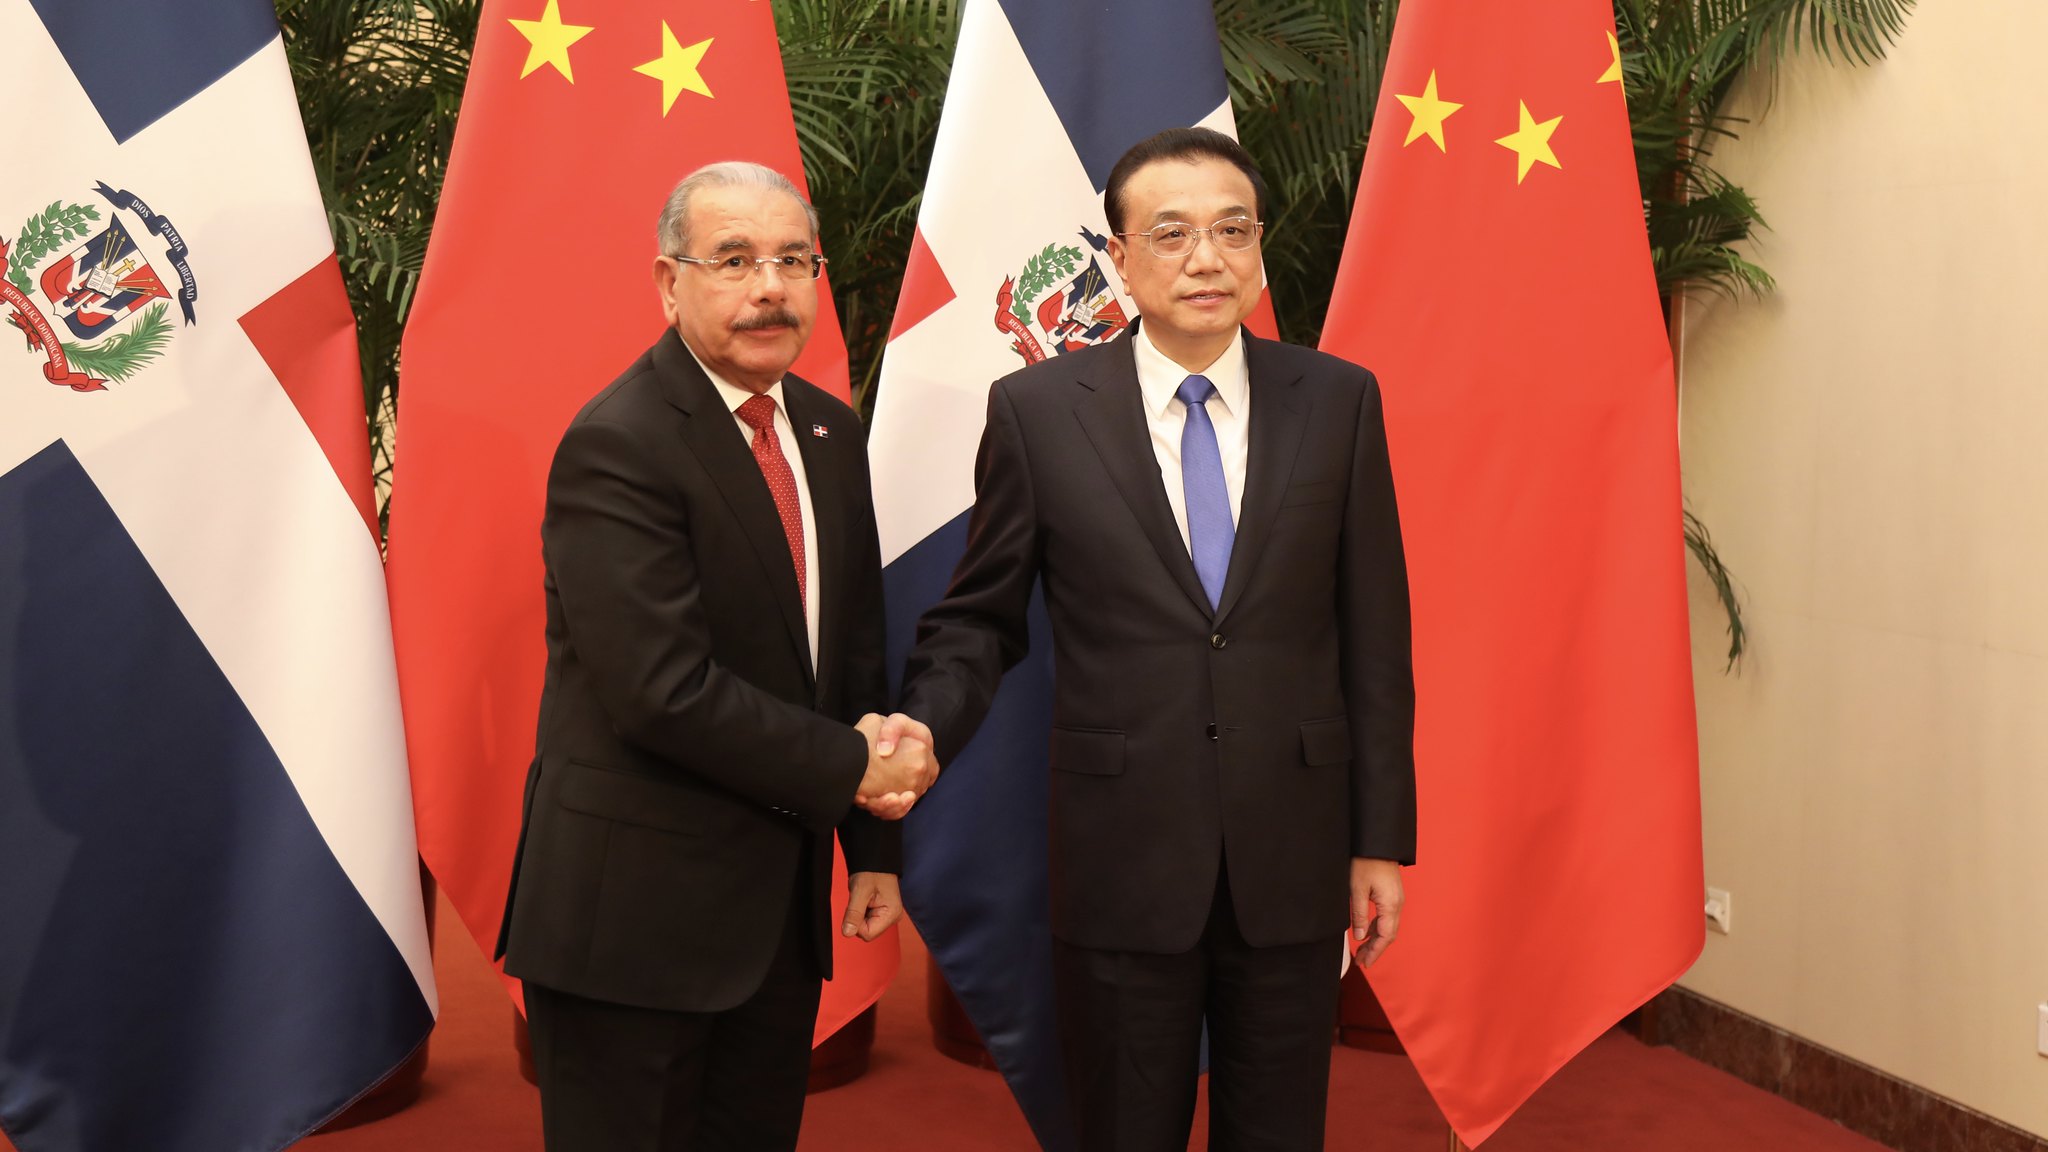 Dois homens de terno e gravata apertam as mãos com as bandeiras da República Dominicana e da China atrás deles.